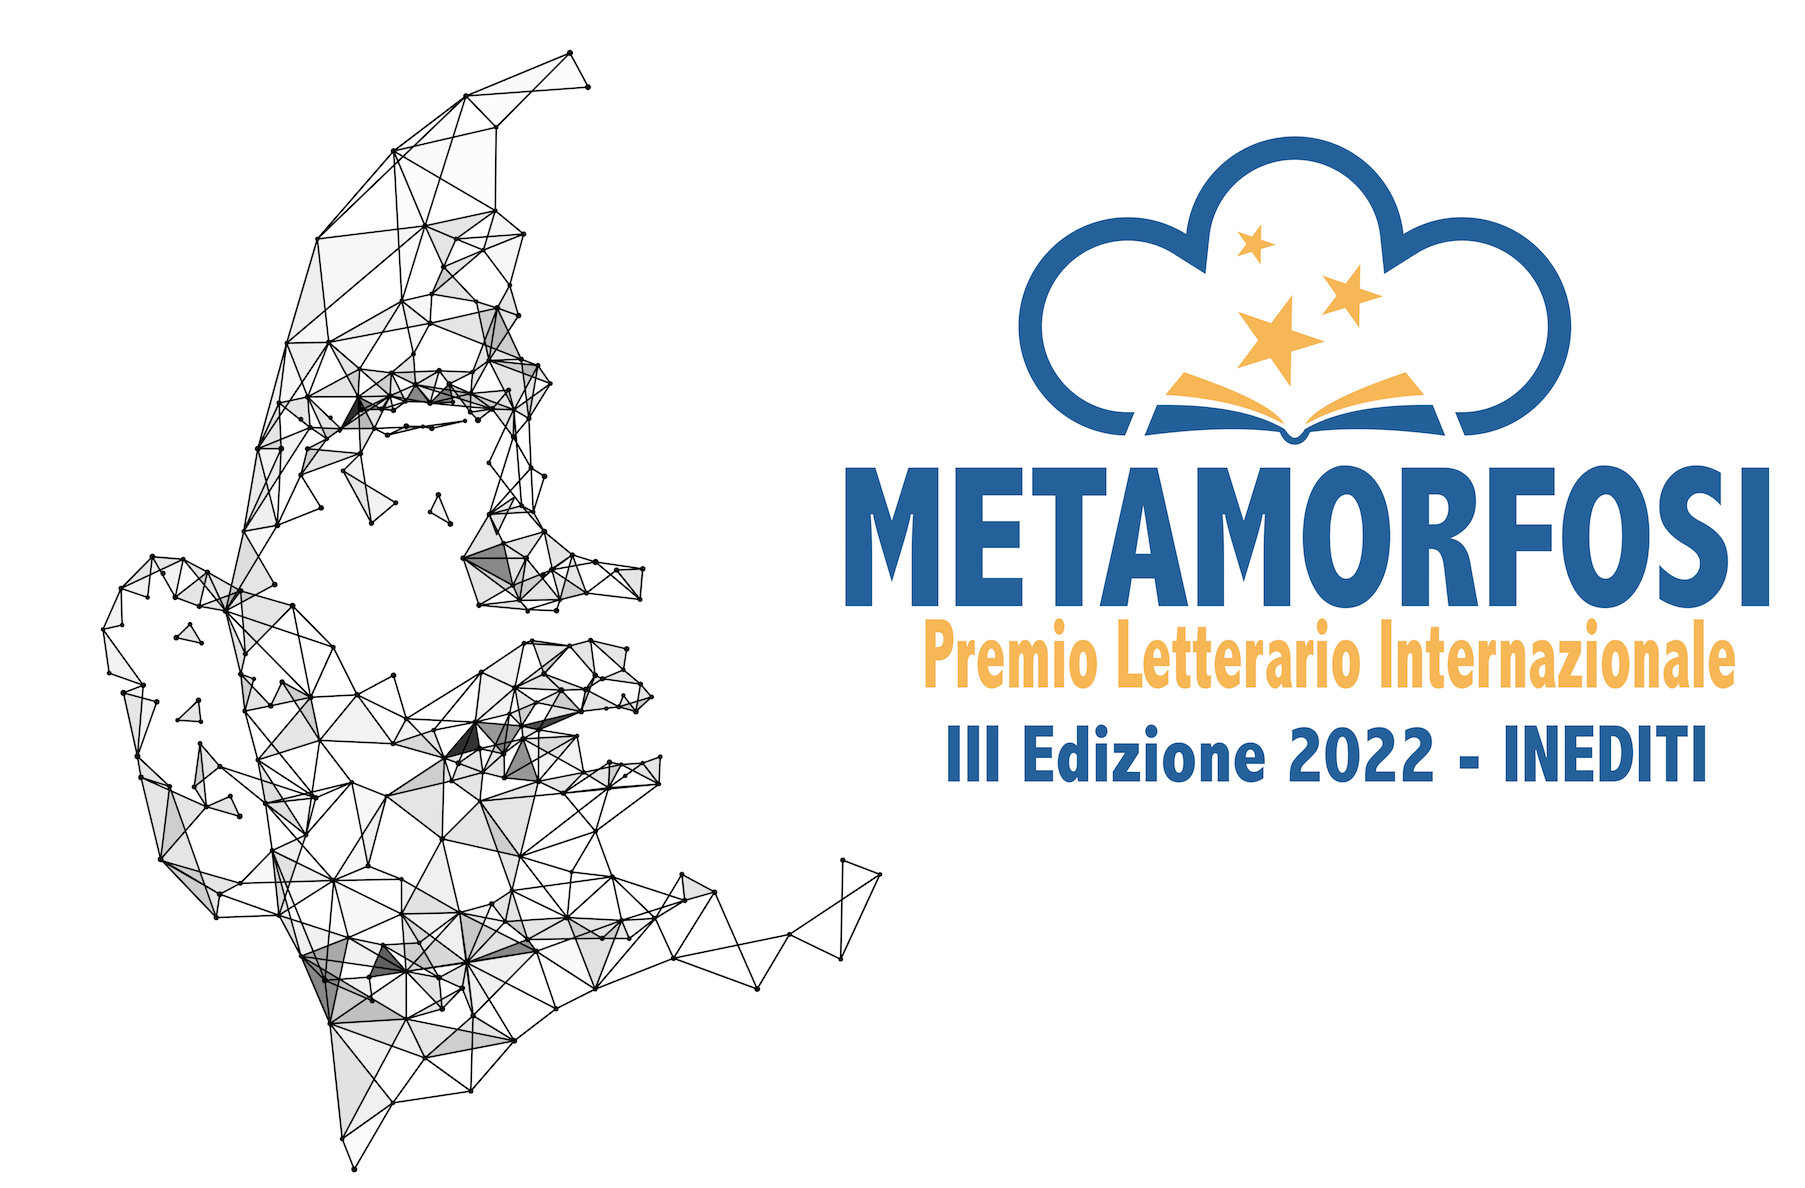 Premio Letterario Internazionale “Metamorfosi” III Edizione 2022 INEDITI – Montepremi 10.000 €